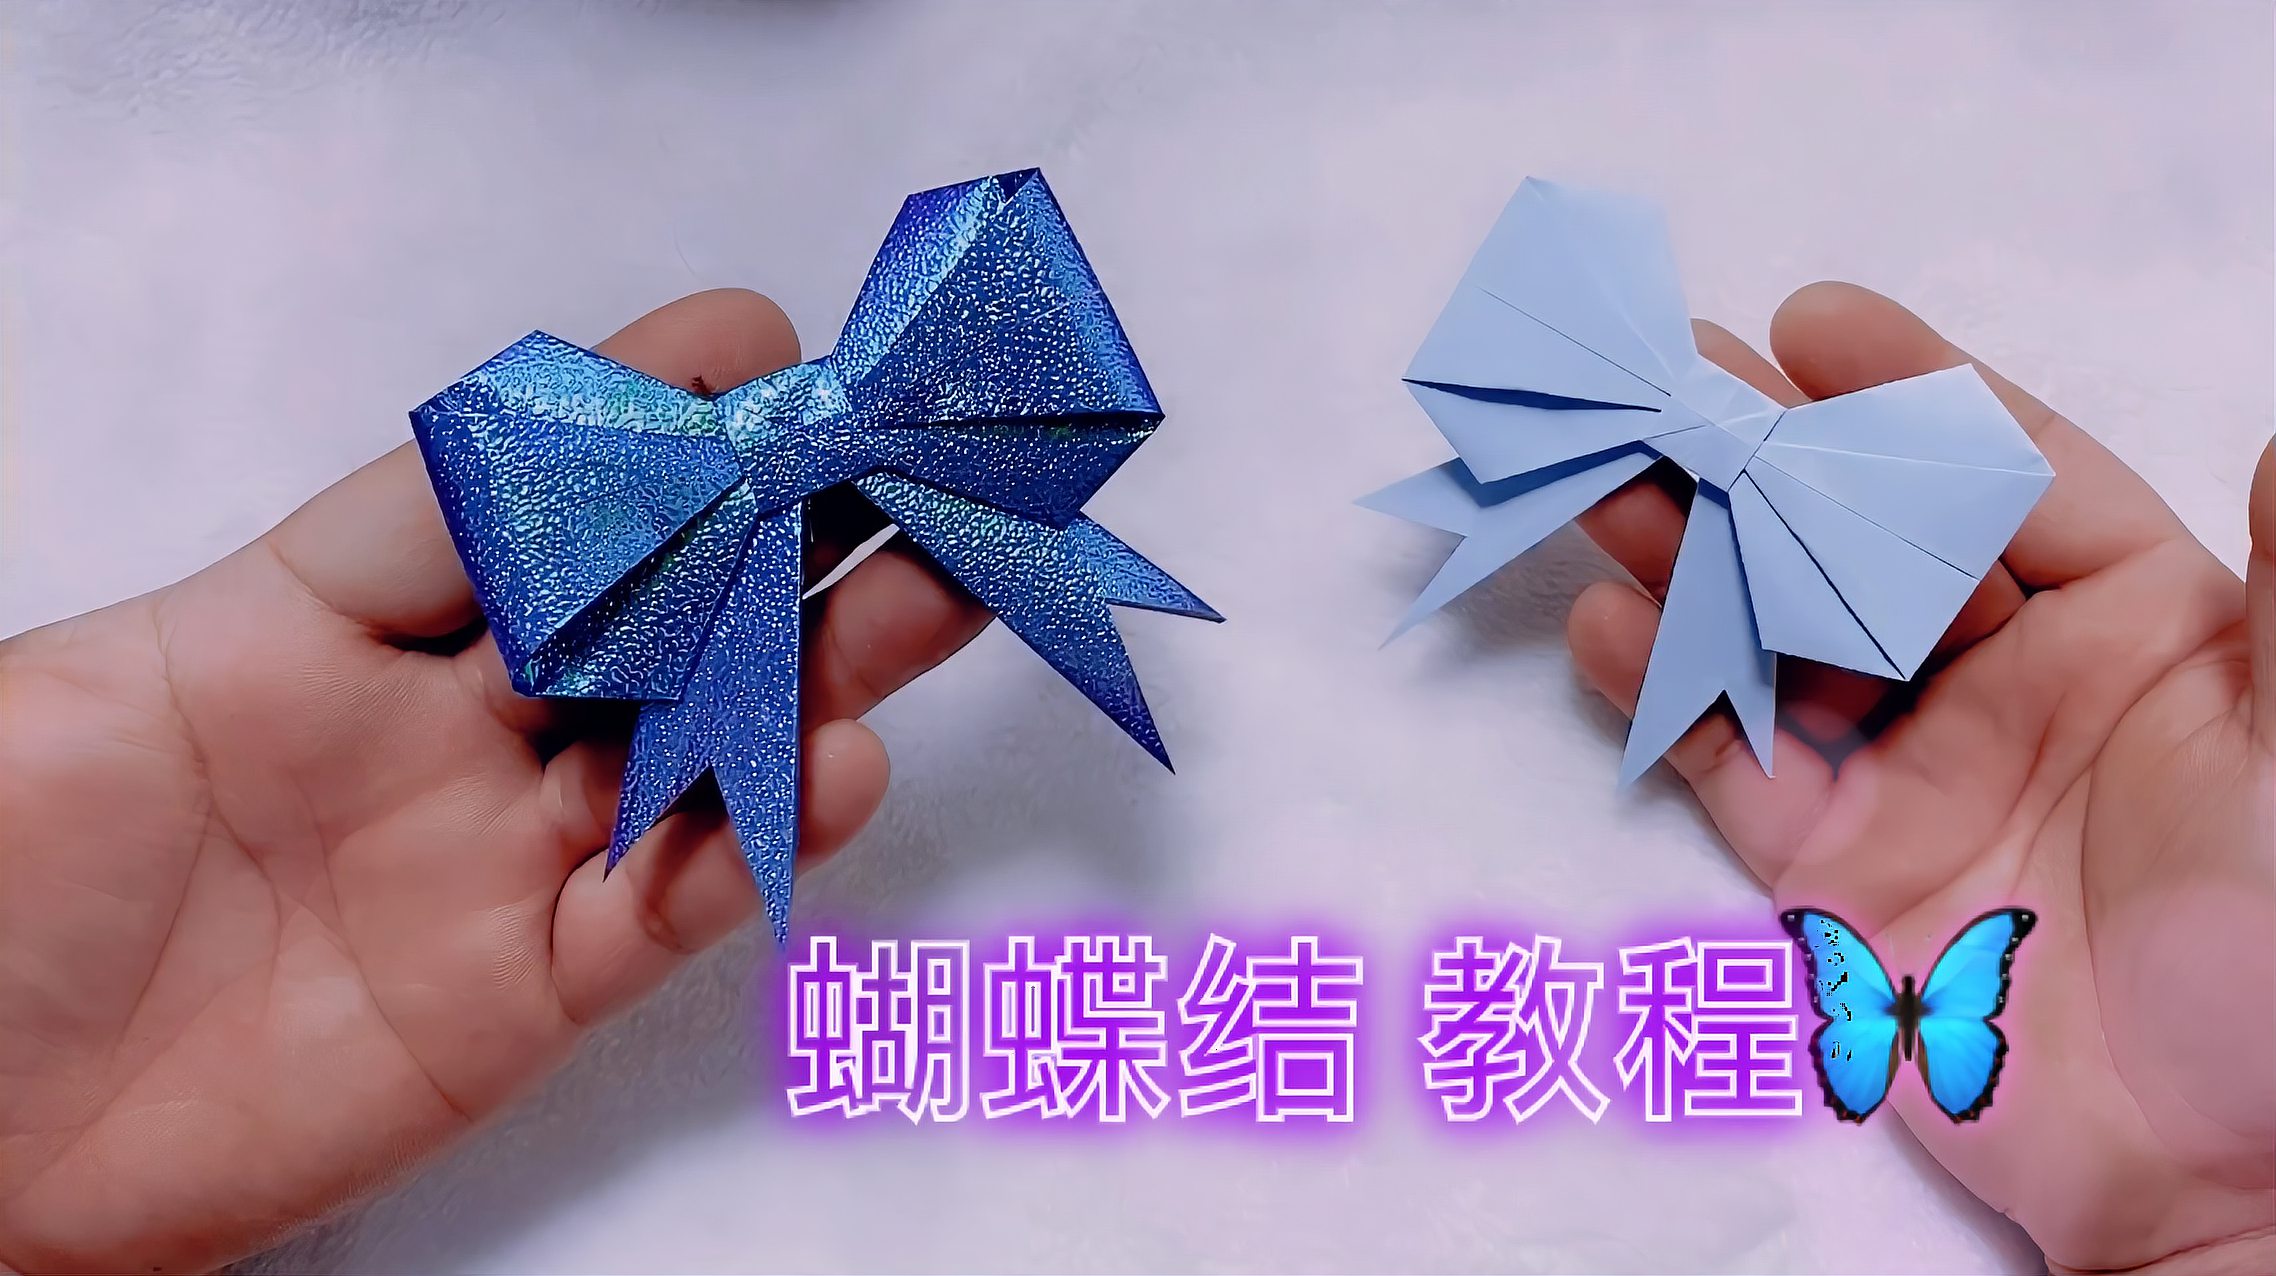 好看的蝴蝶结用折纸做,快来学吧5个视频